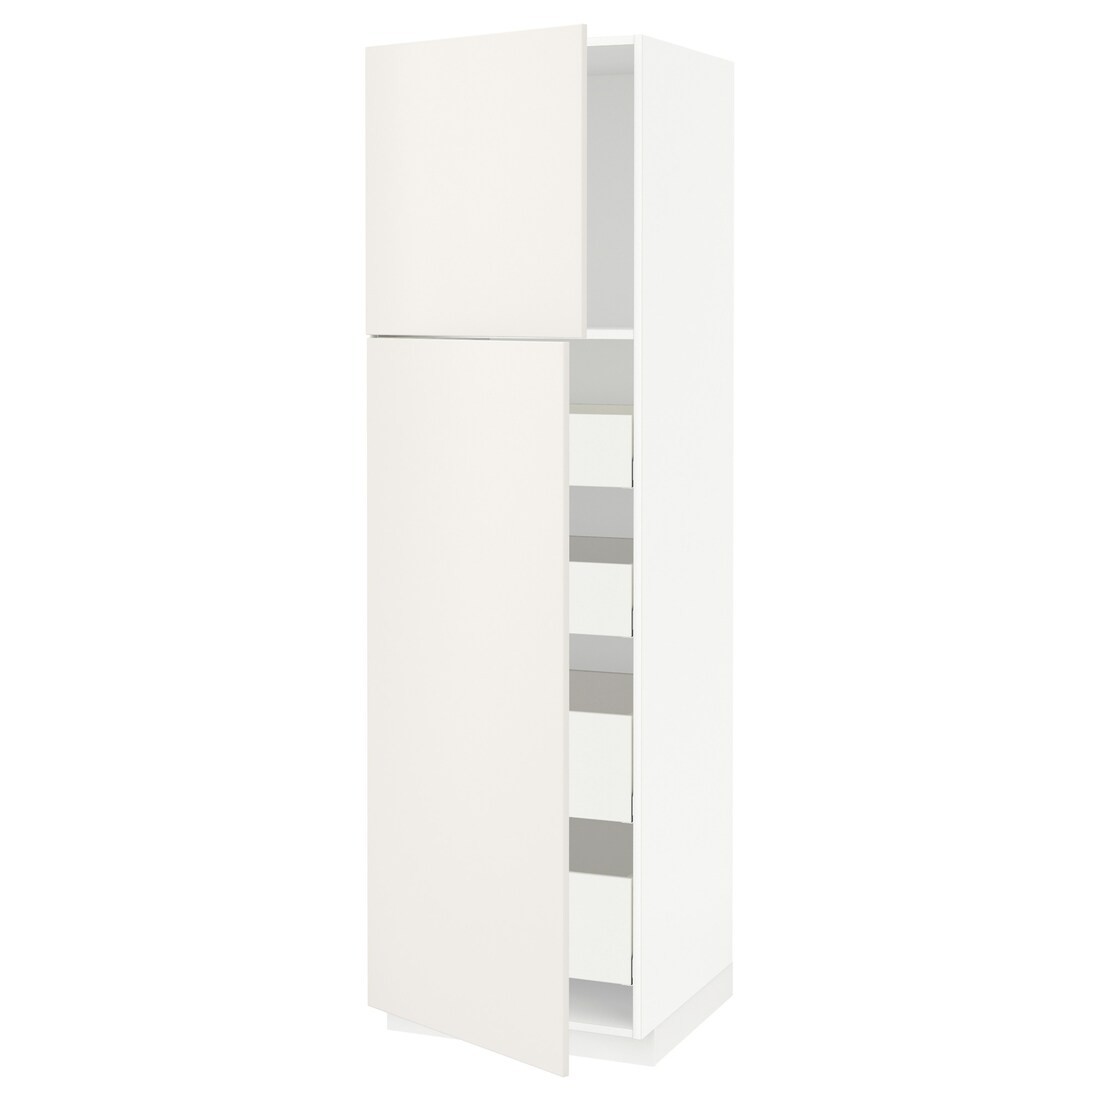 IKEA METOD МЕТОД / MAXIMERA МАКСИМЕРА Шкаф высокий 2 двери / 4 ящика, белый / Veddinge белый, 60x60x200 см 19454675 194.546.75